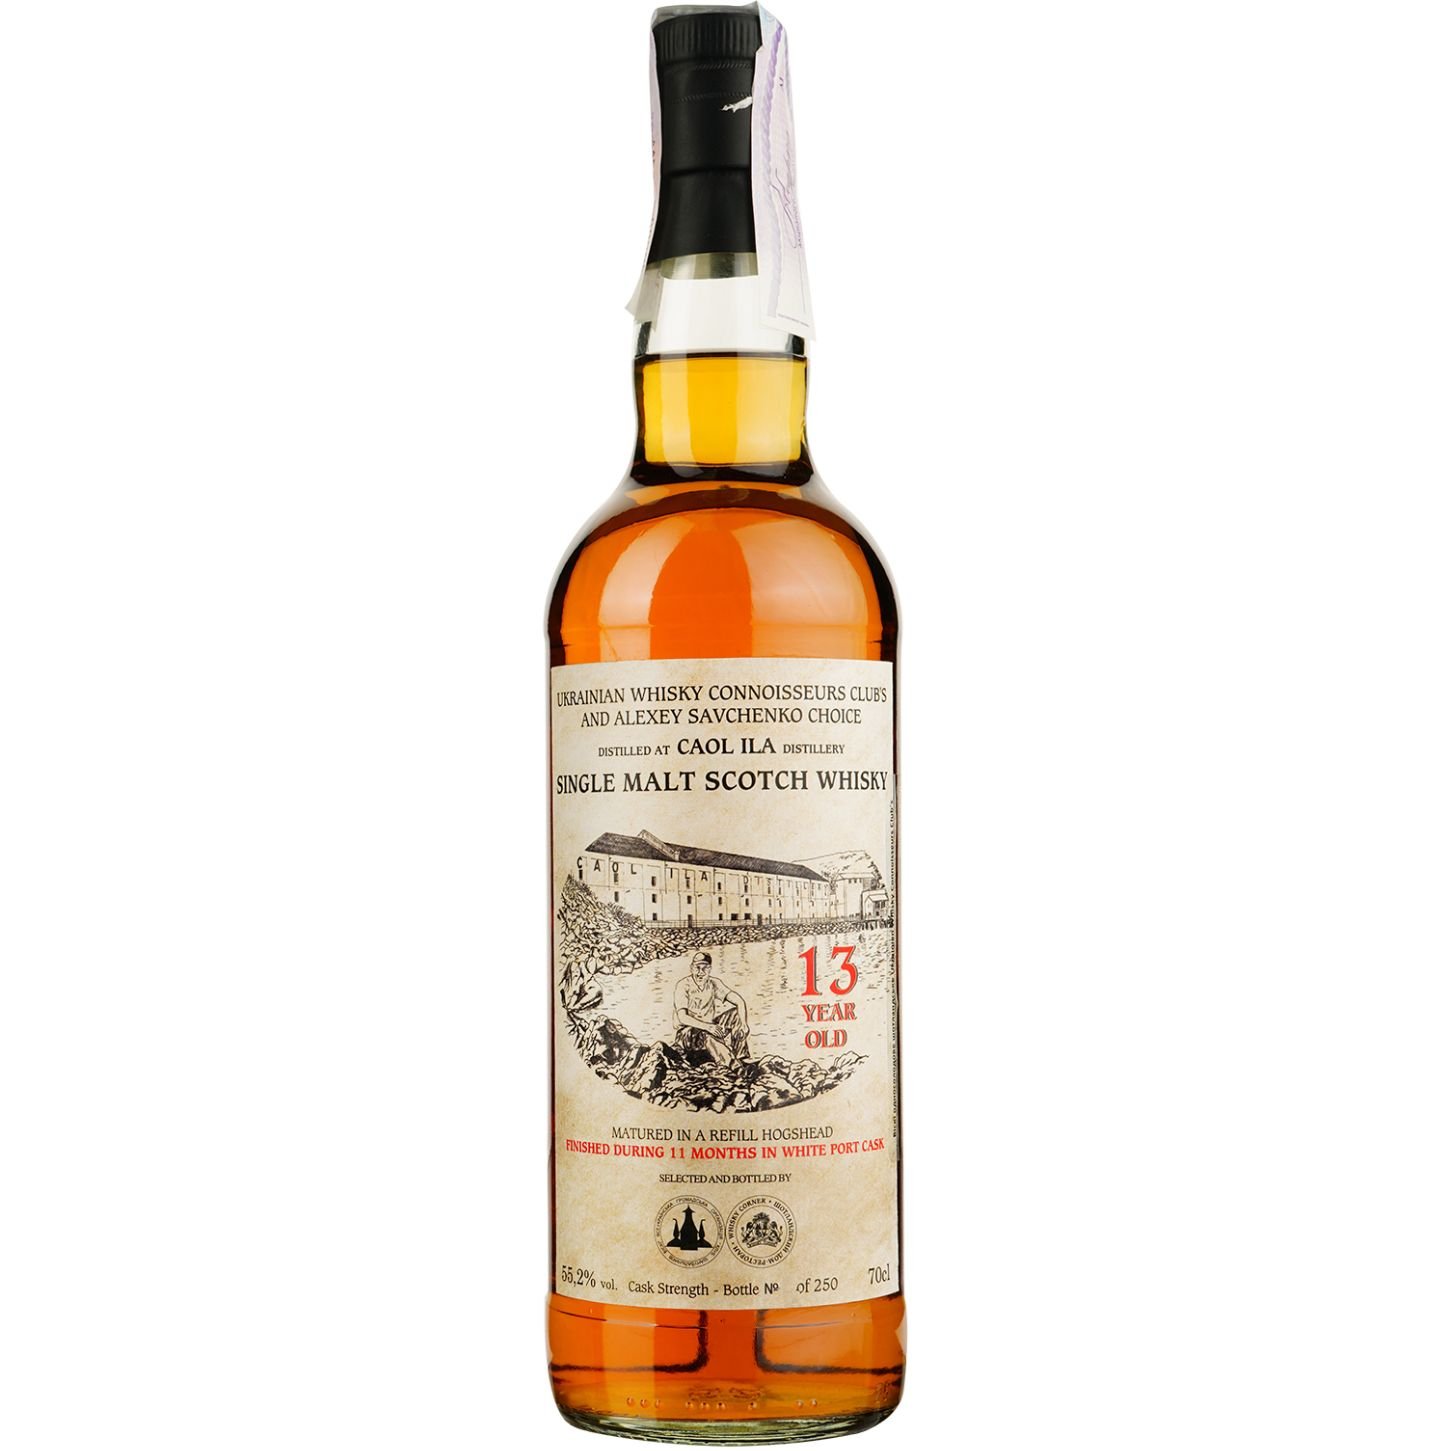 Віскі Caol Ila 13 Years Old White Porto Single Malt Scotch Whisky, у подарунковій упаковці, 55,2%, 0,7 л - фото 2